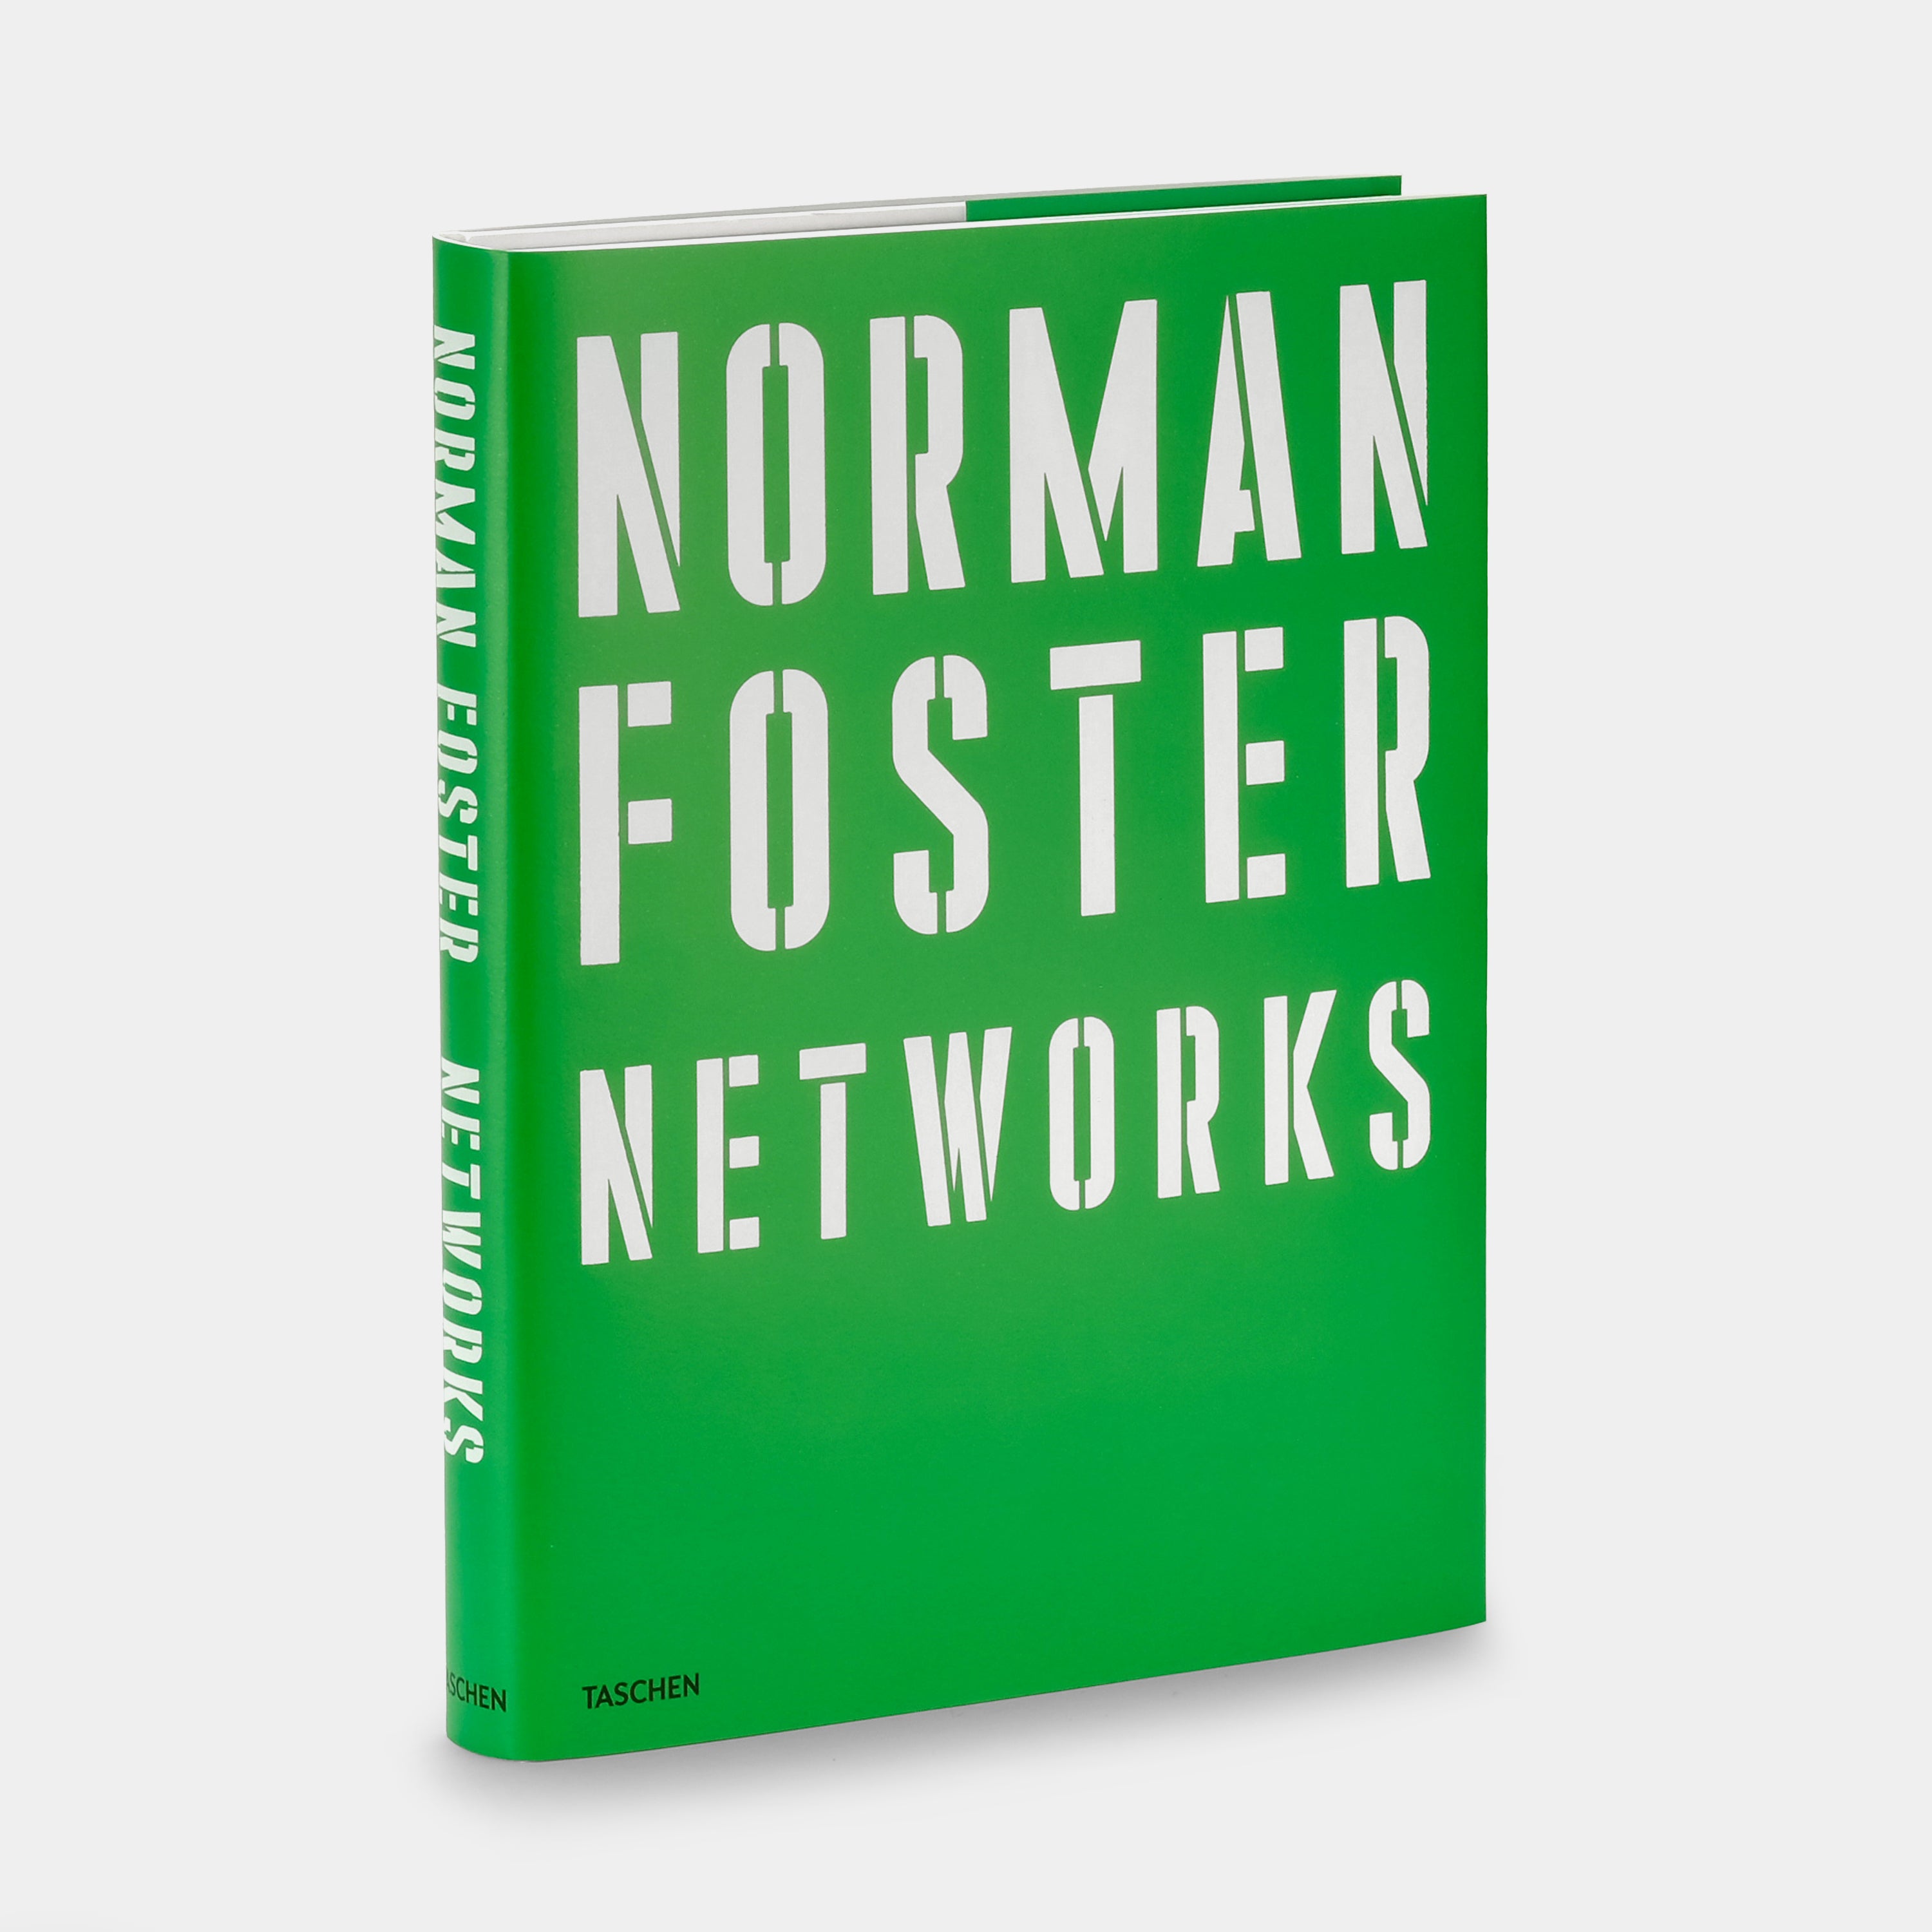 Norman Foster XXL Taschen Book